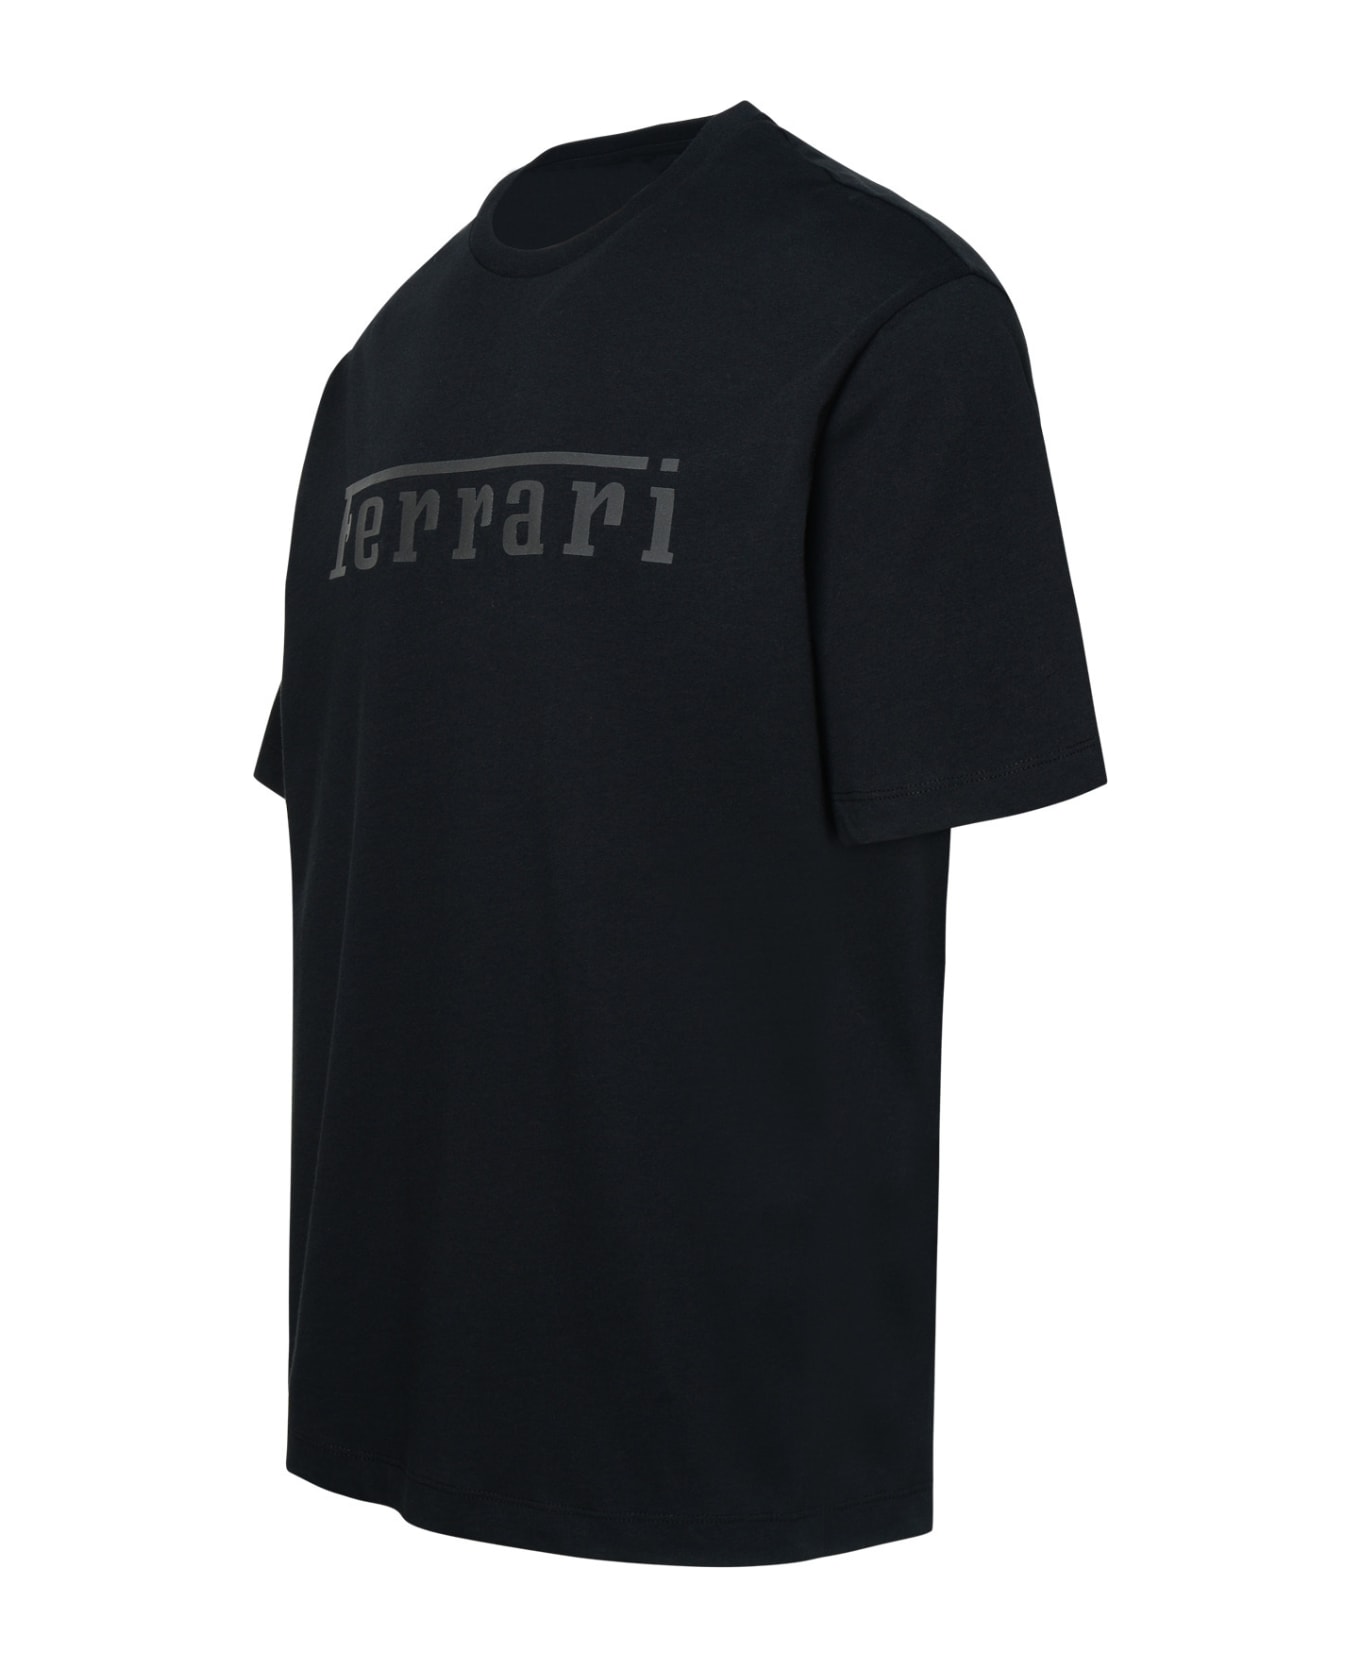 Ferrari Black Cotton T-shirt - Black